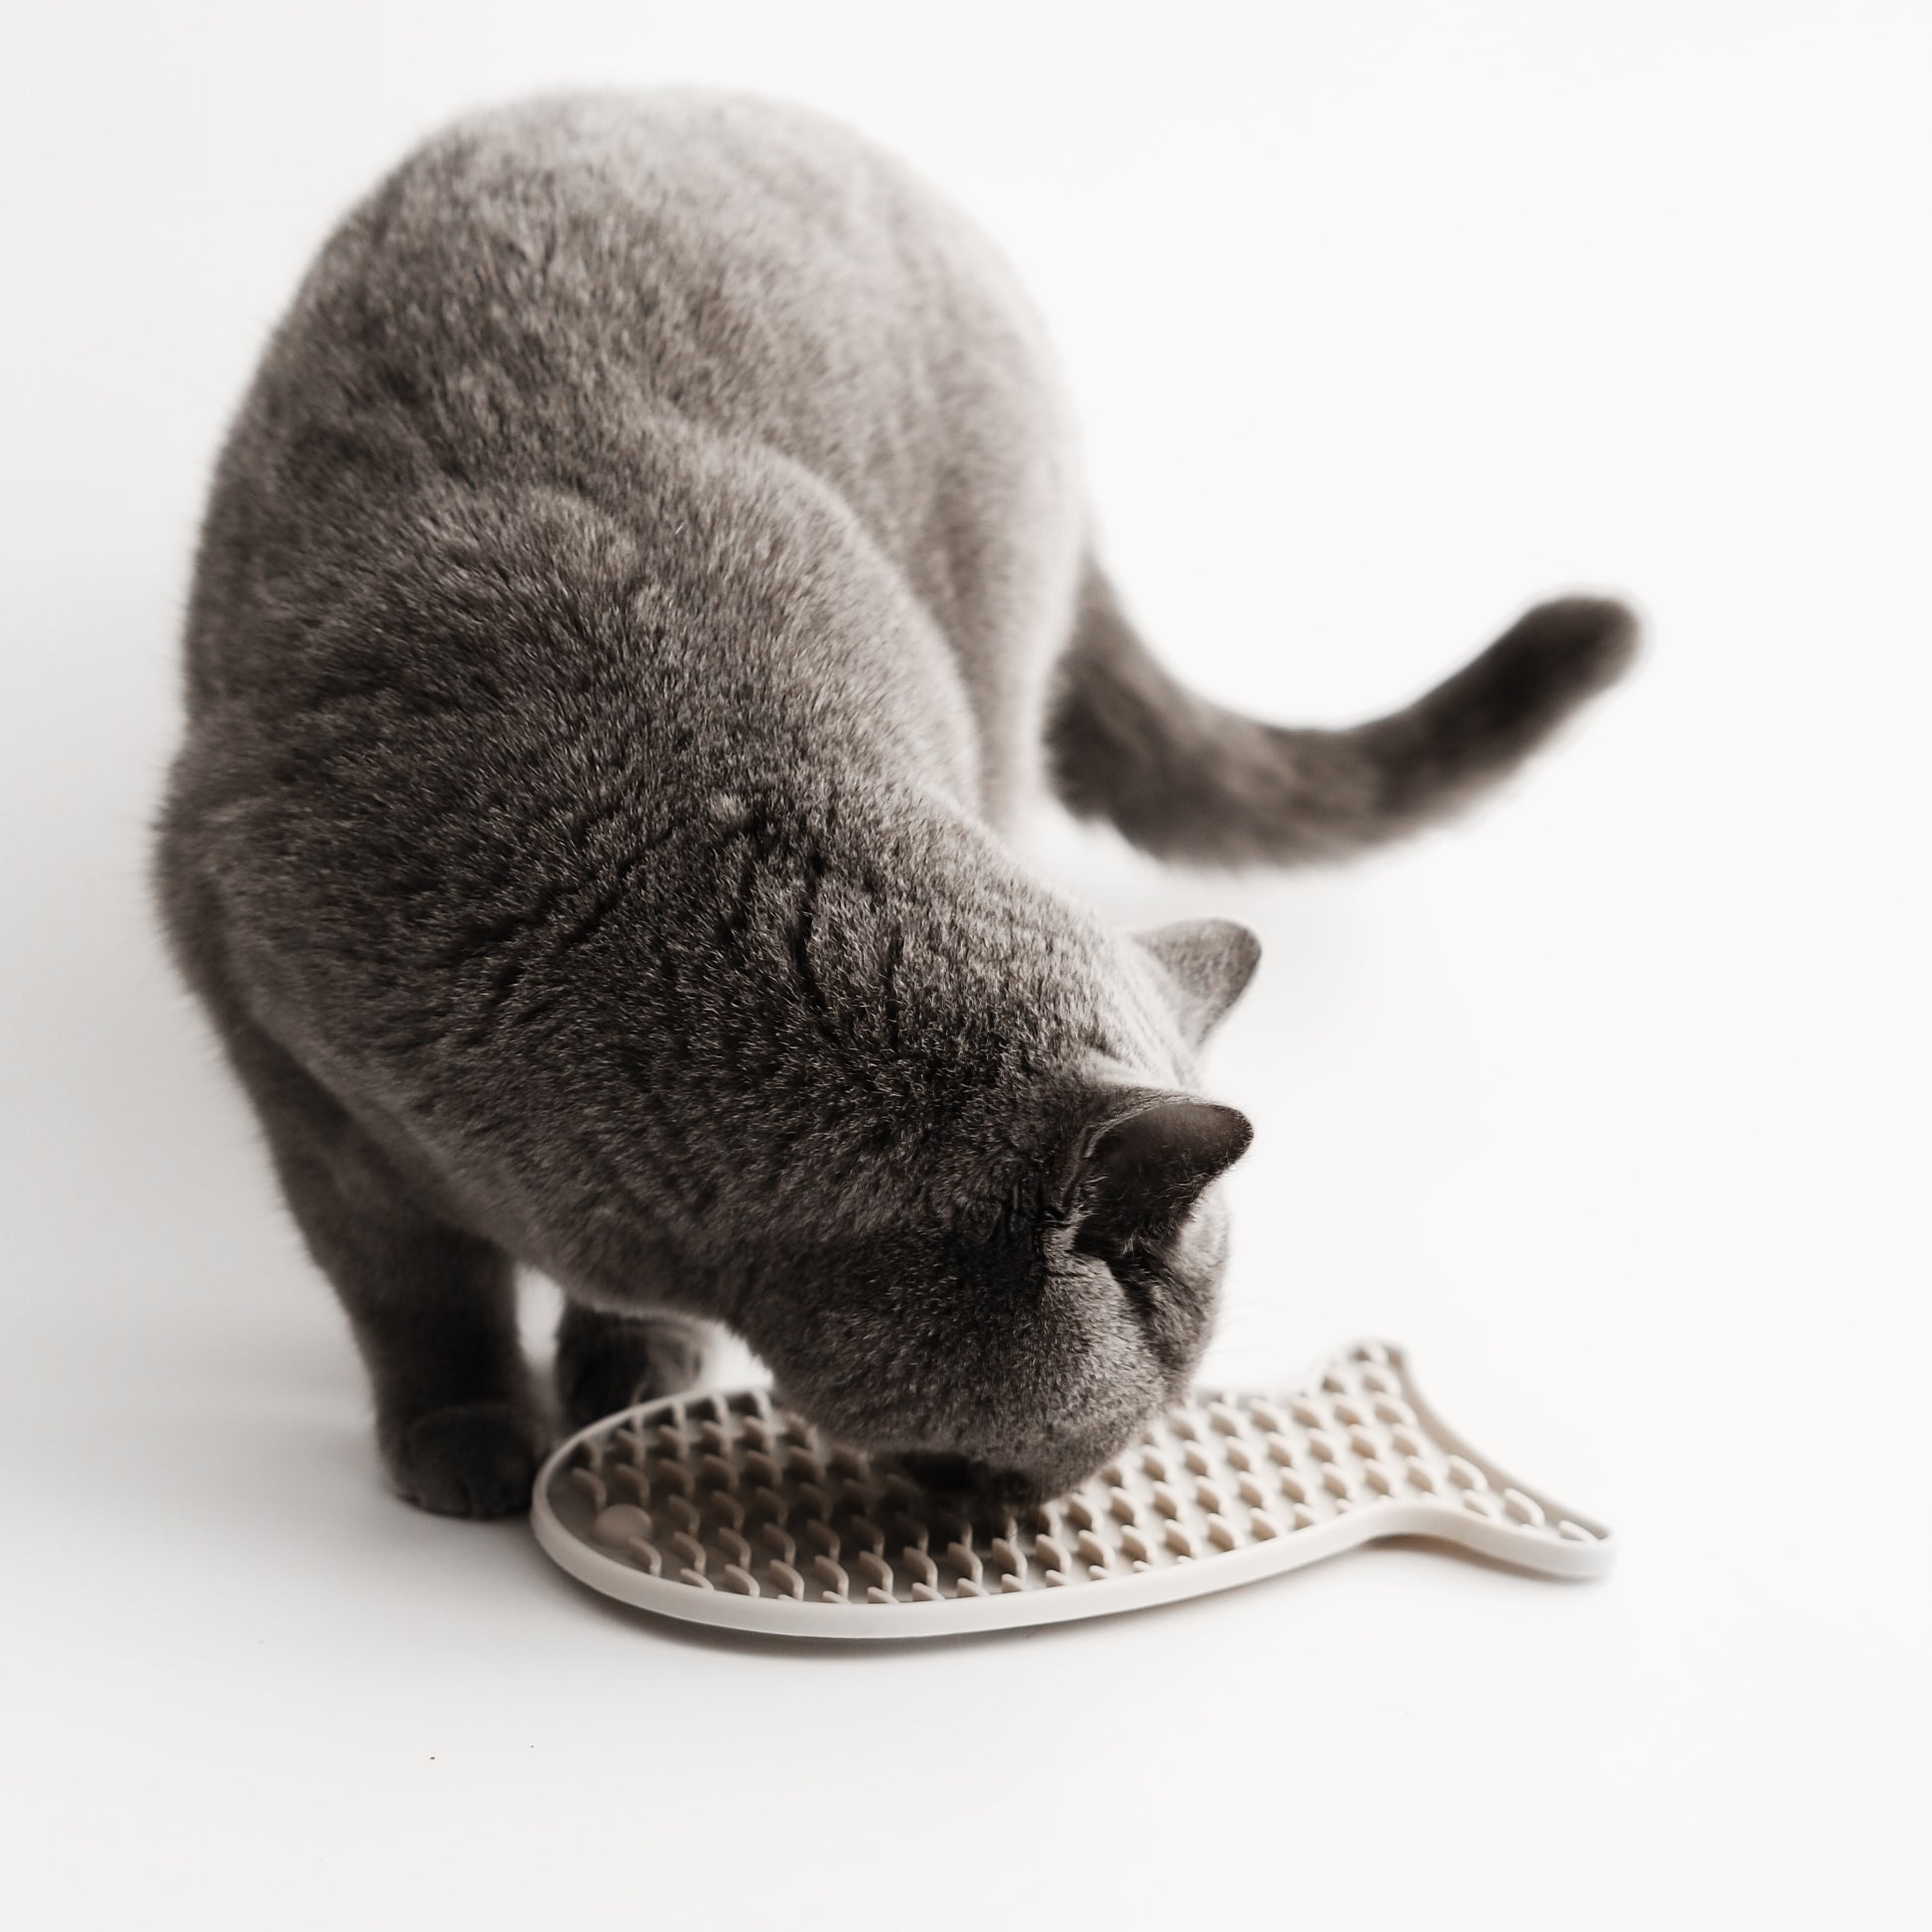 Katze leckt an Schleckmatte zur Beschäftigung.